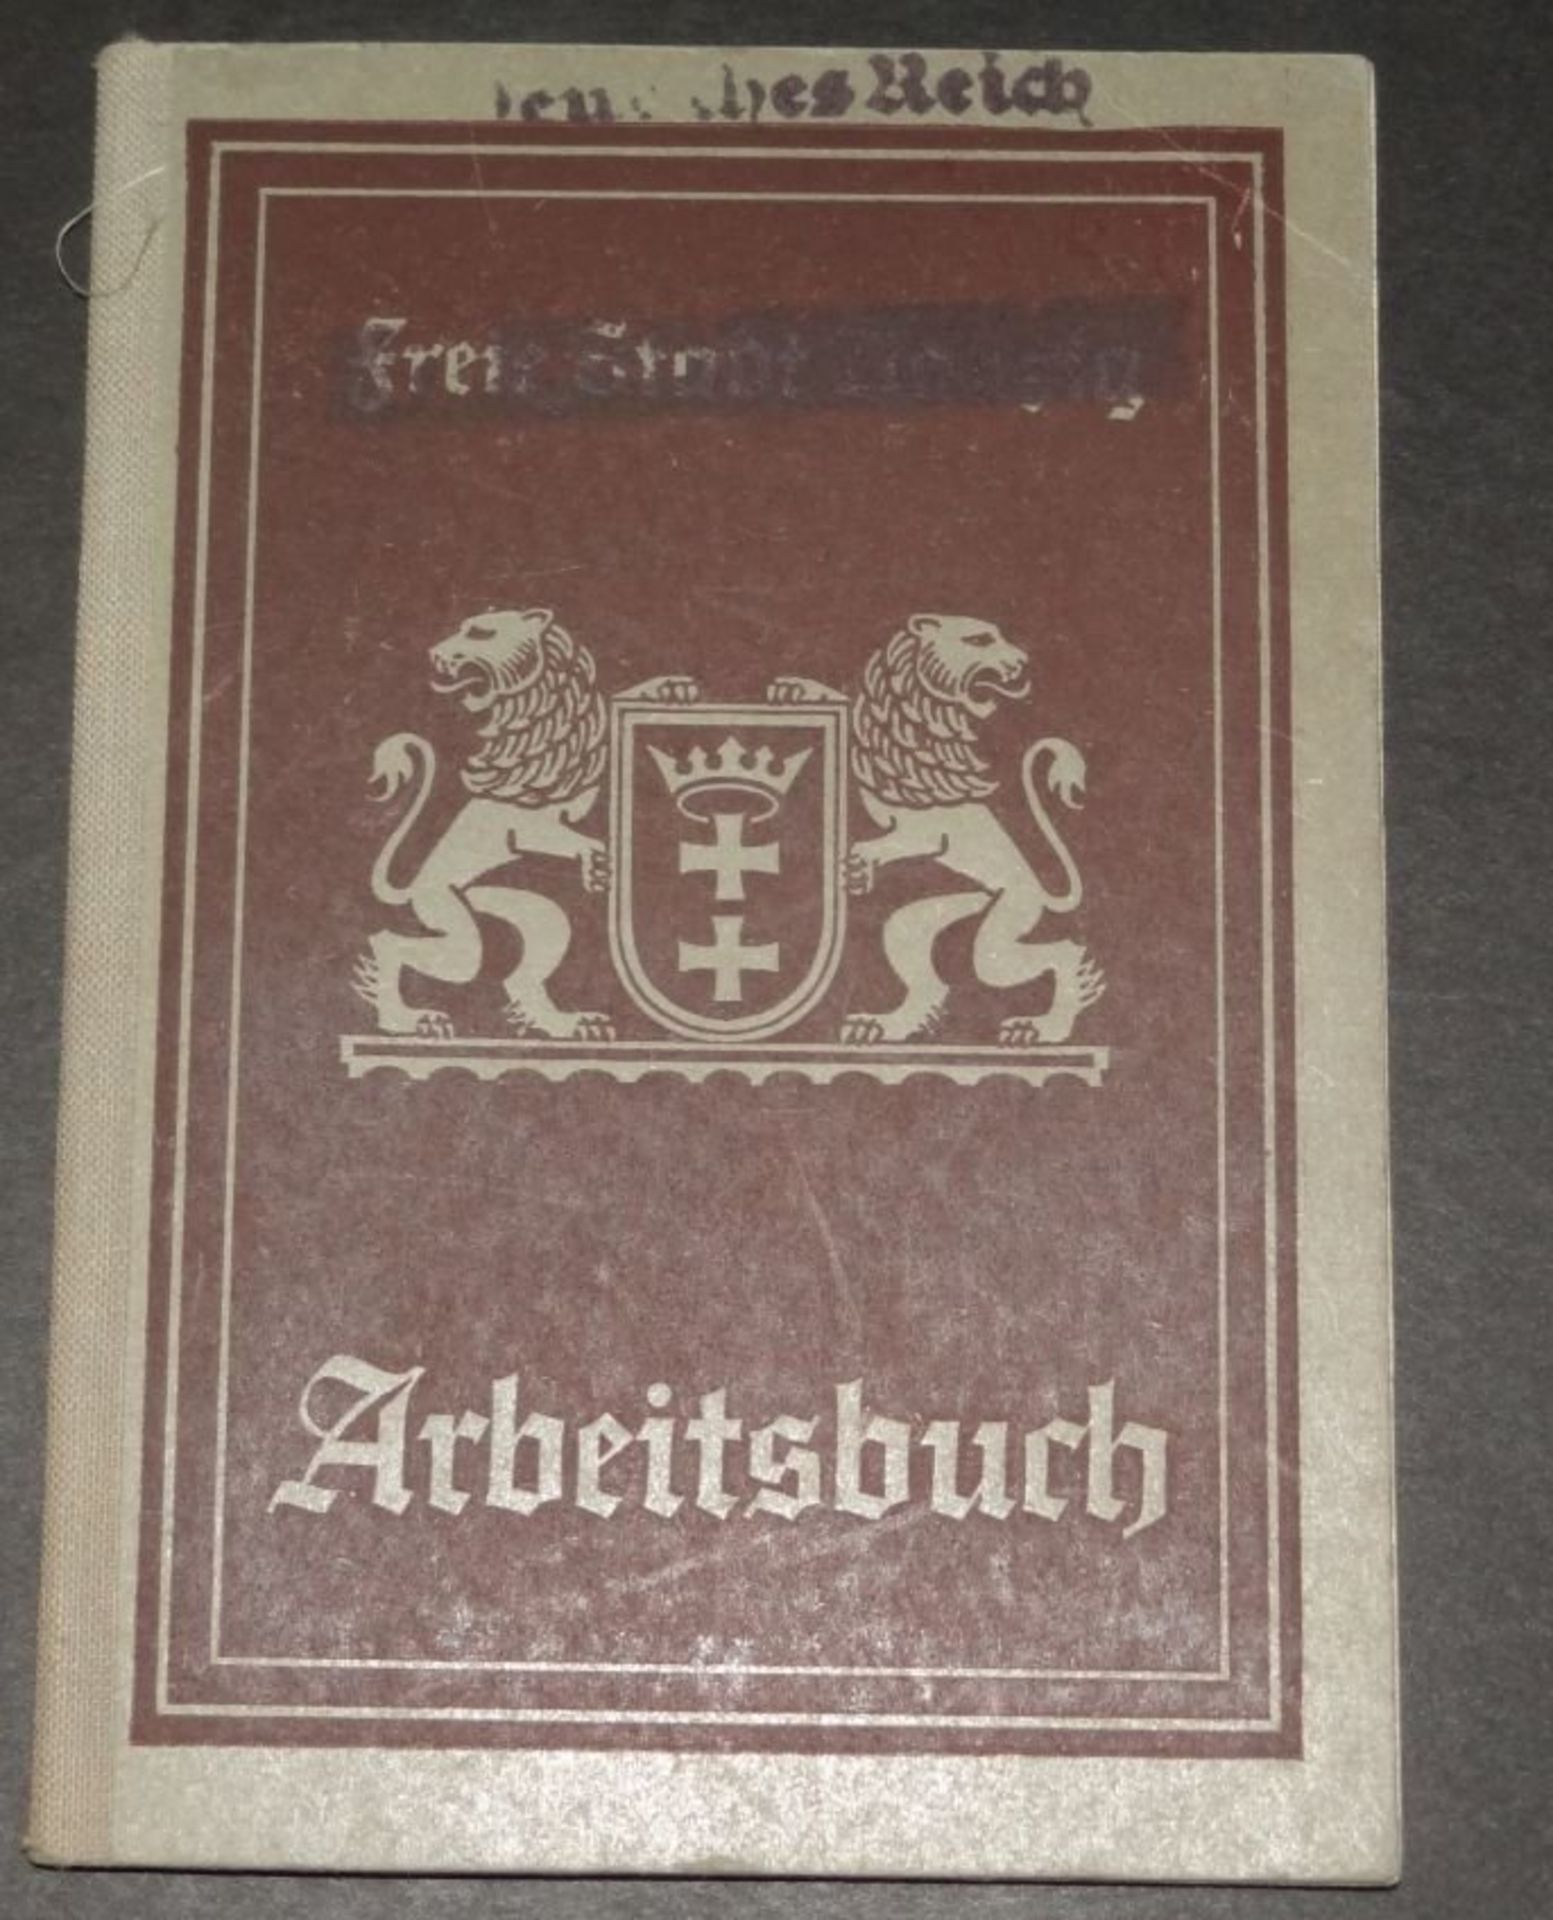 Arbeitsbuch "Freie Stadt Danzig" ab 1934- - -22.61 % buyer's premium on the hammer priceVAT margin